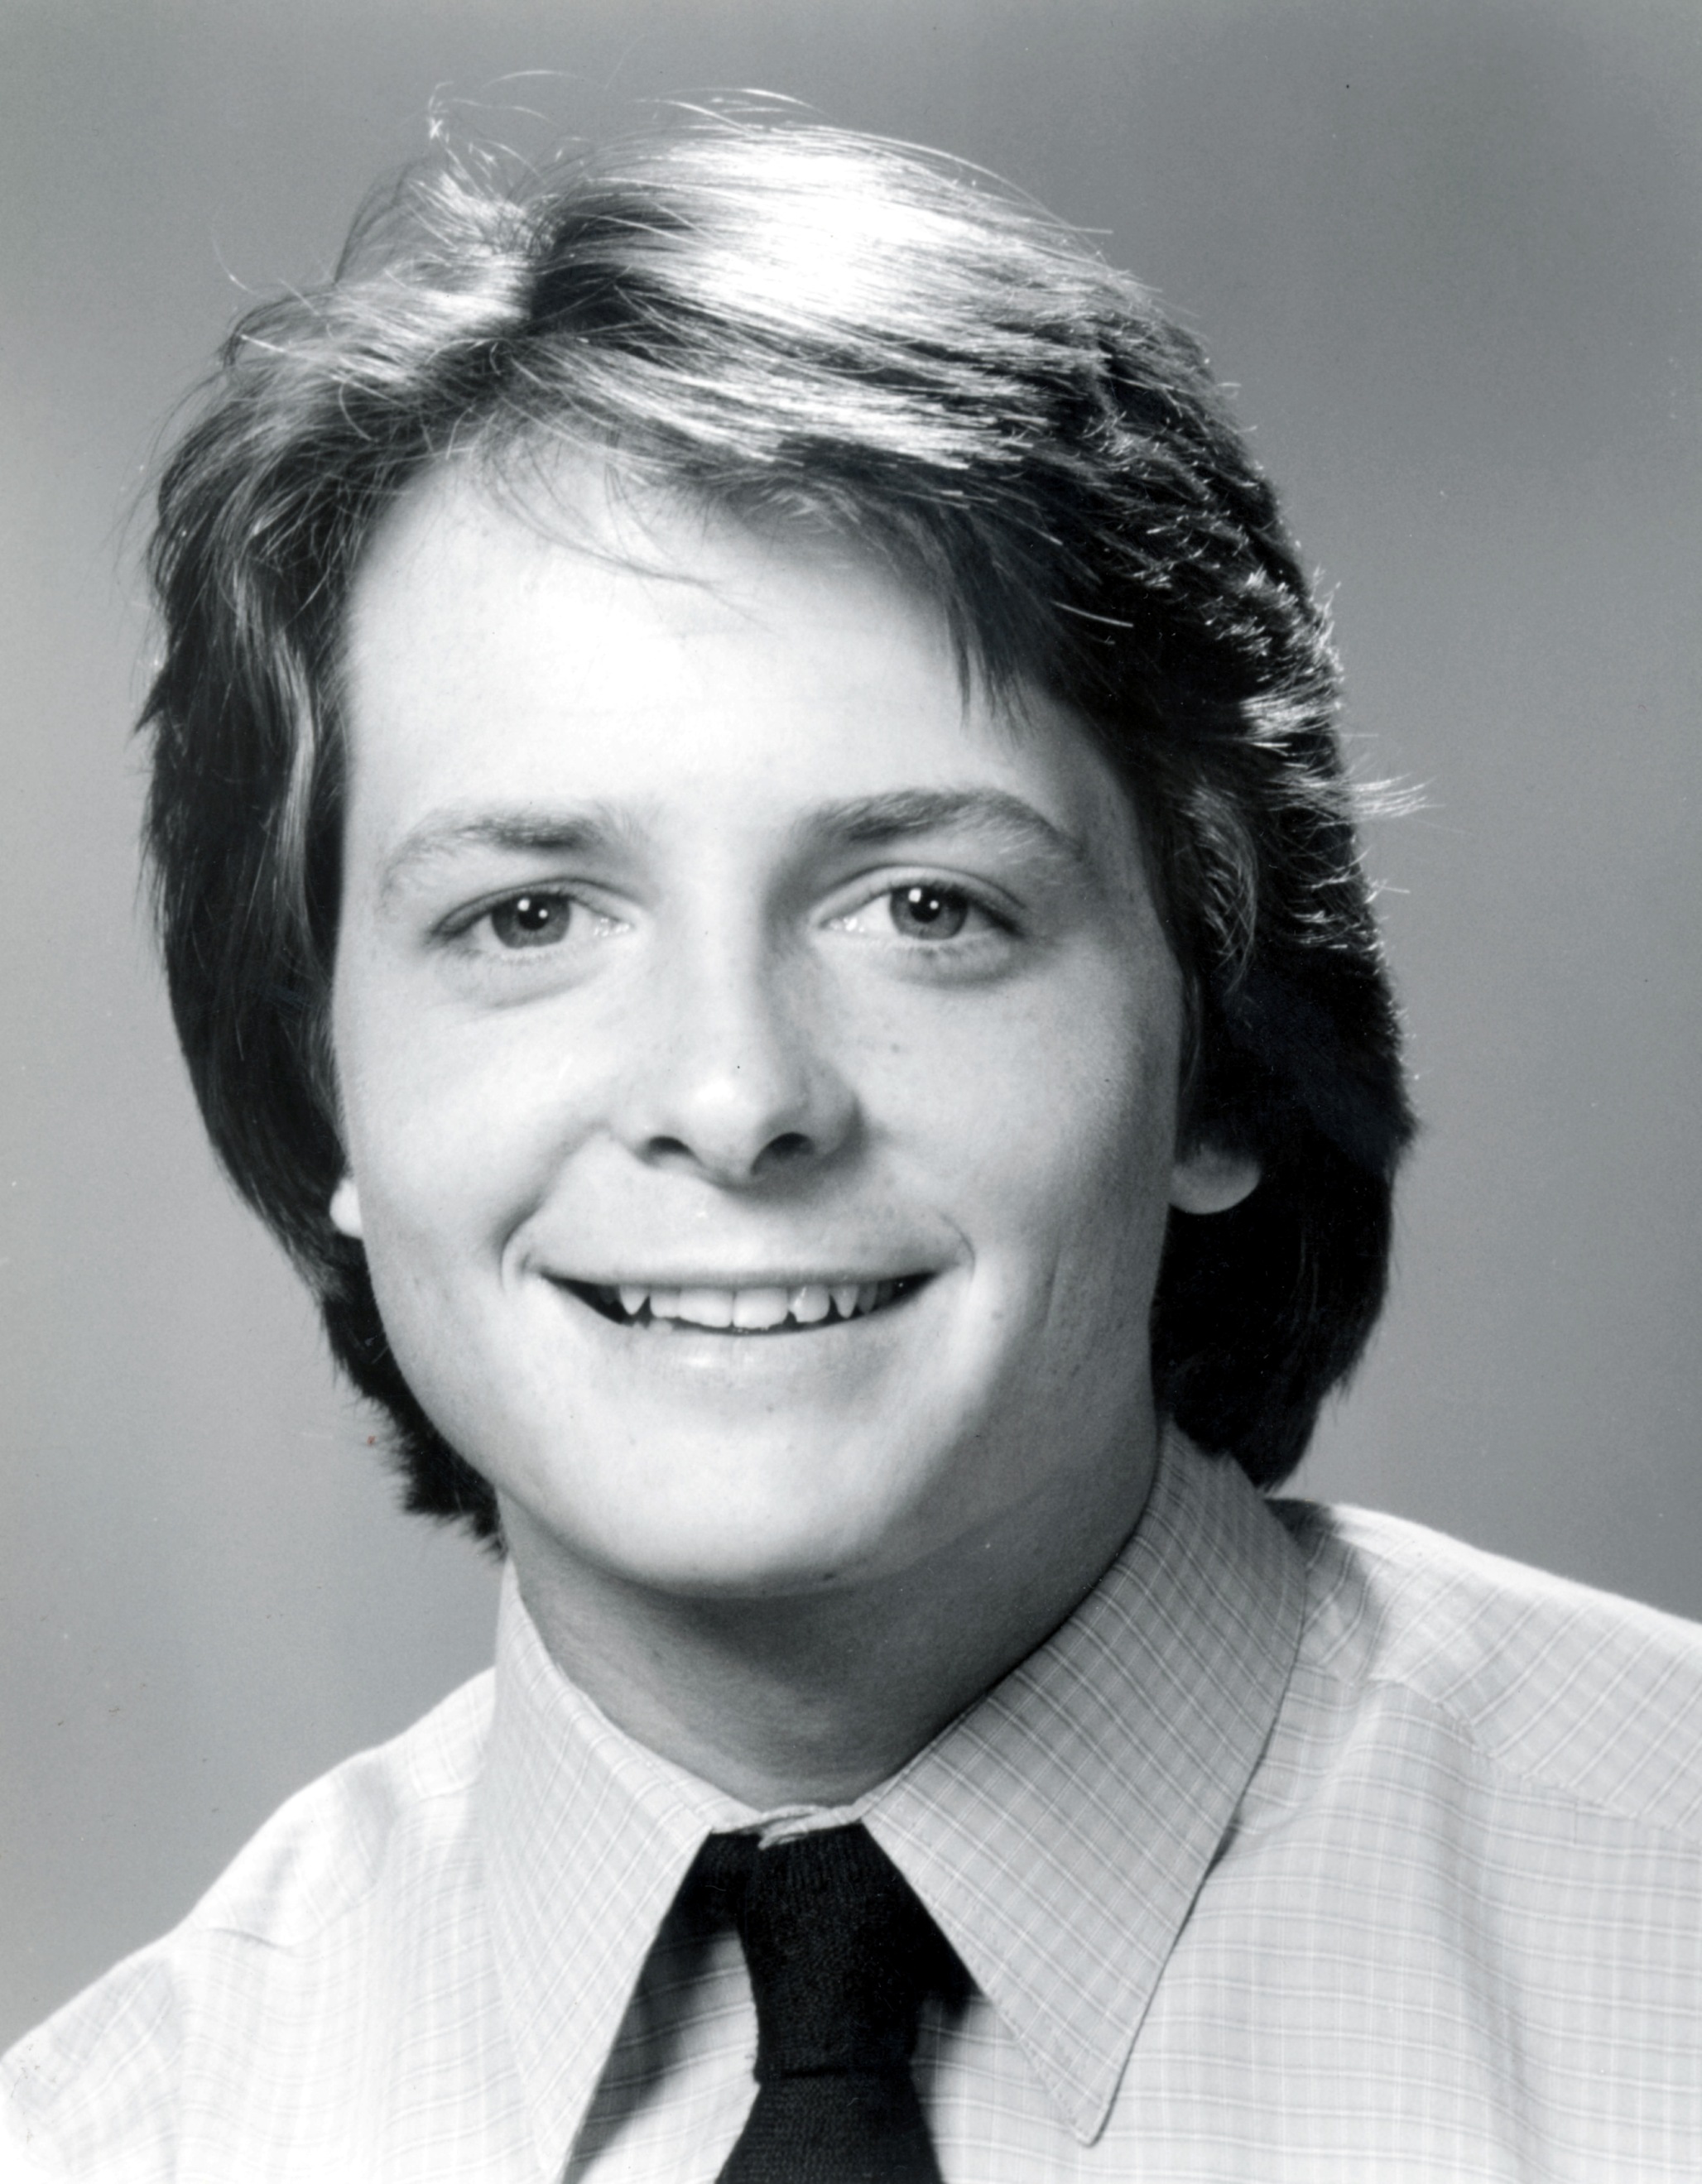 Michael J. Fox - Images